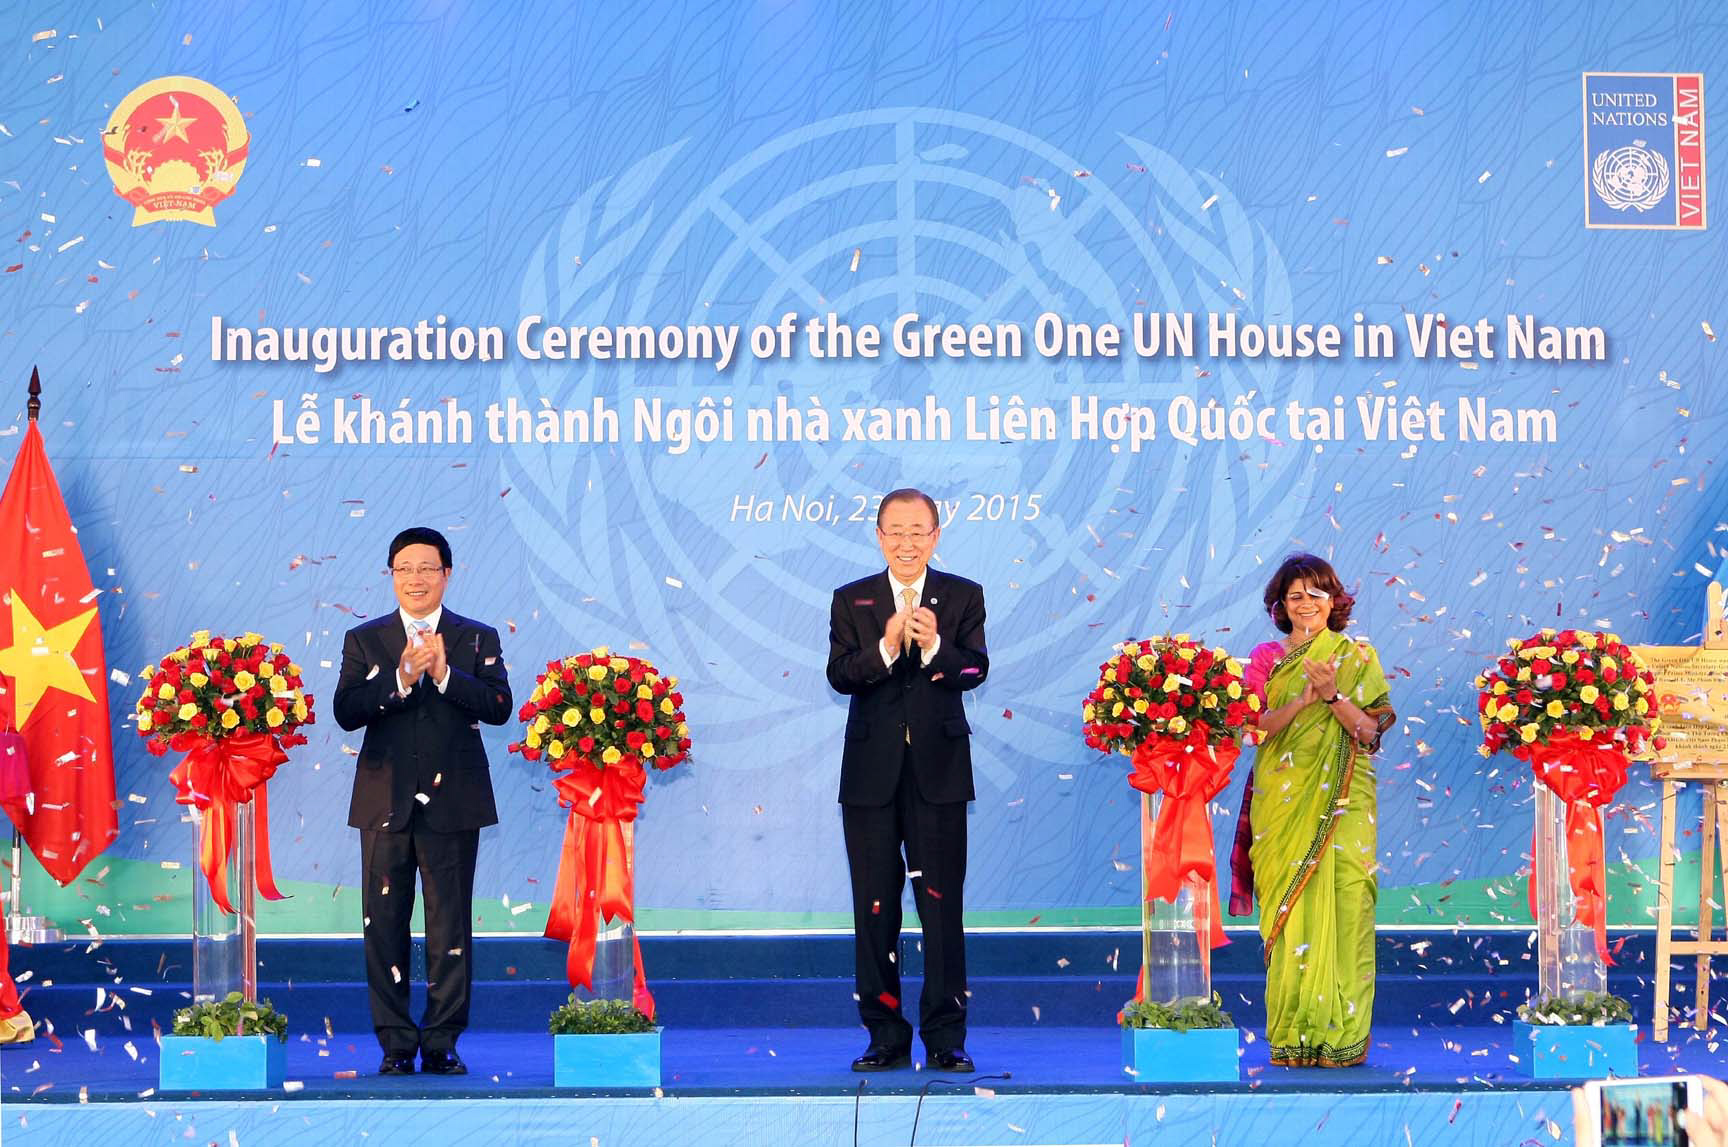  Ngày 23/5/2015, tại Hà Nội, Tổng Thư ký Liên hiệp quốc Ban Ki-moon cùng Phó Thủ tướng, Bộ trưởng Bộ Ngoại giao Phạm Bình Minh dự Lễ khánh thành “Ngôi nhà xanh Liên hiệp quốc” tại Việt Nam.